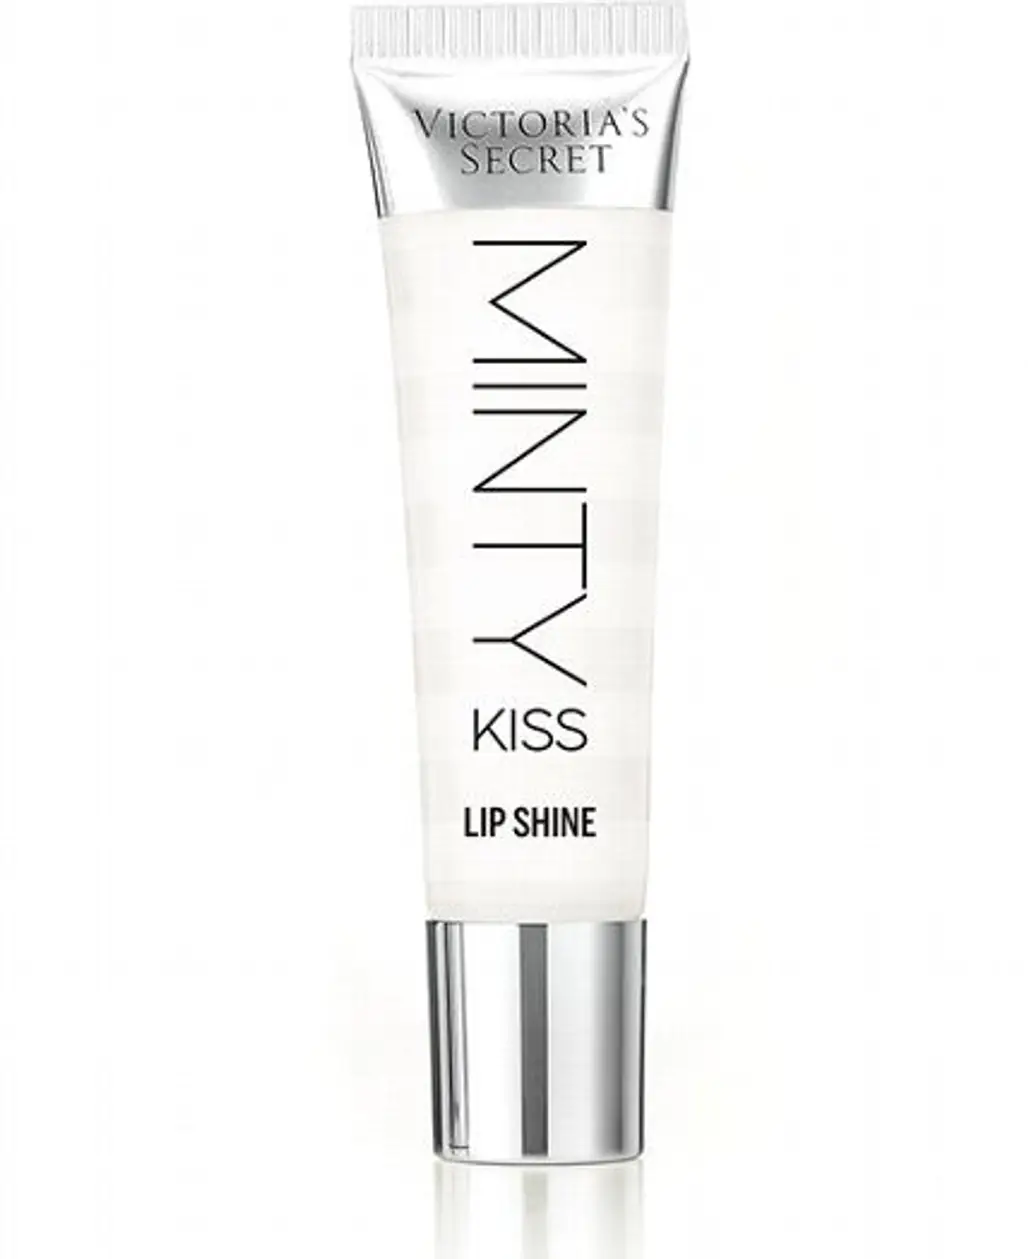 Victoria’s Secret Minty Kiss Lip Shine